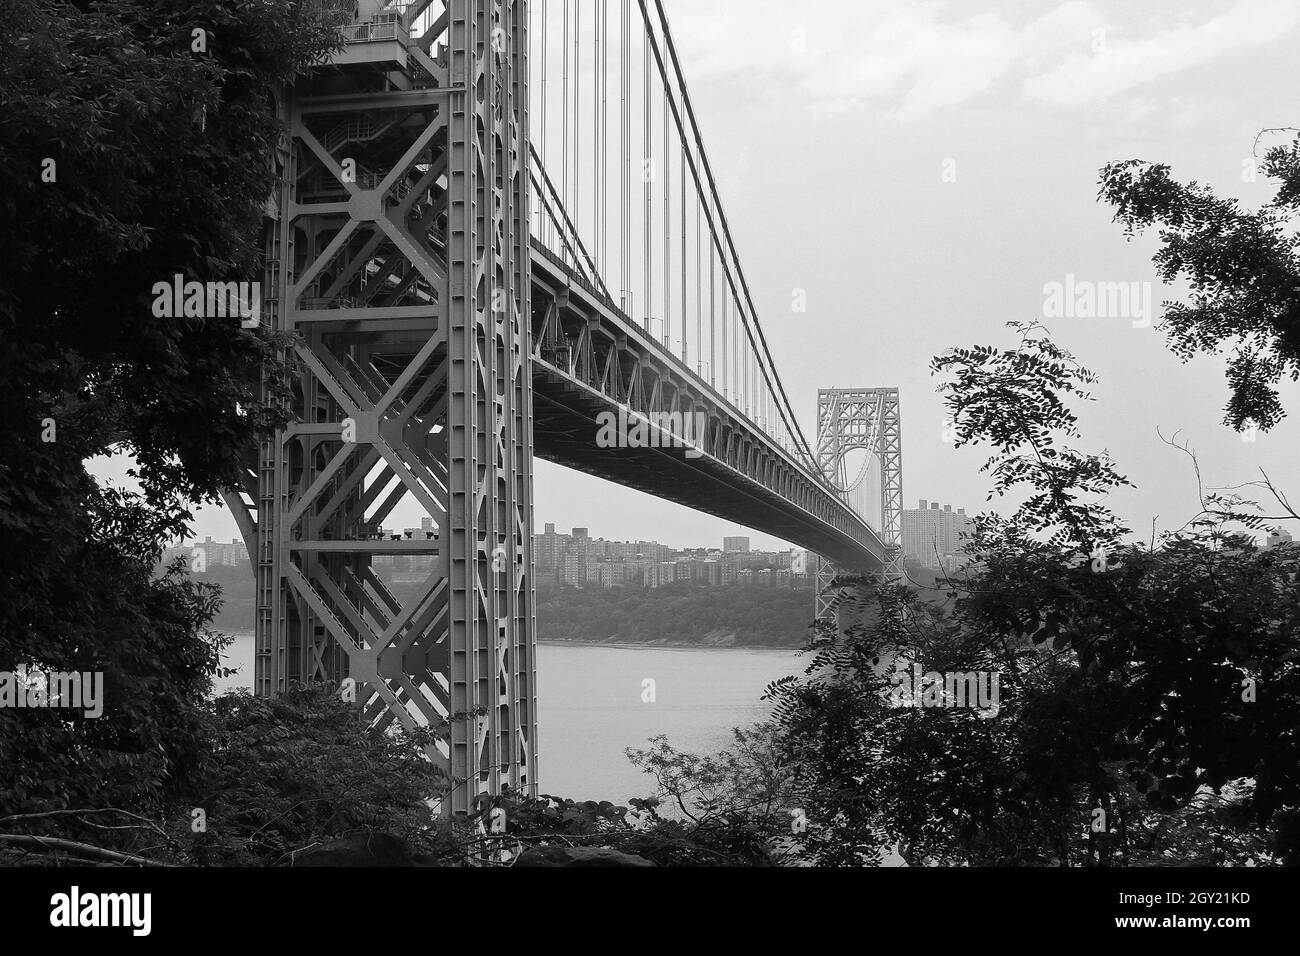 Scatto in scala di grigi del ponte George Washington sul fiume Hudson a New York, USA Foto Stock